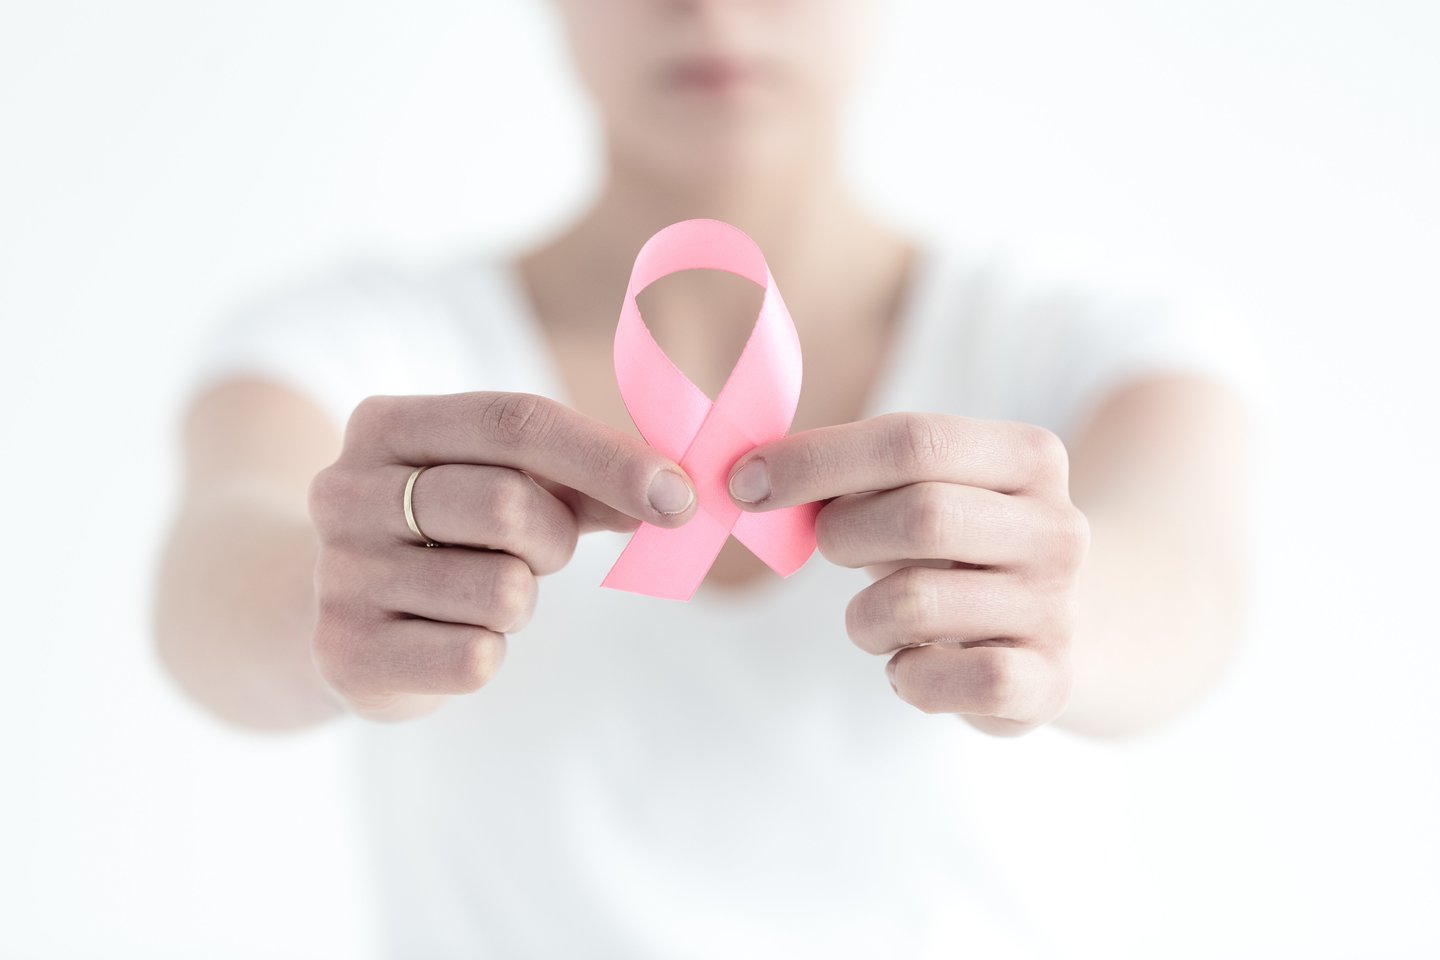 Tyrėjų komanda tvirtino, kad pakeitus gyvenimo būdą, rūpinantis sveikata, sumažėtų tiek  krūties vėžio atsinaujinimo, tiek širdies ligų rizika.<br> 123rf nuotr.